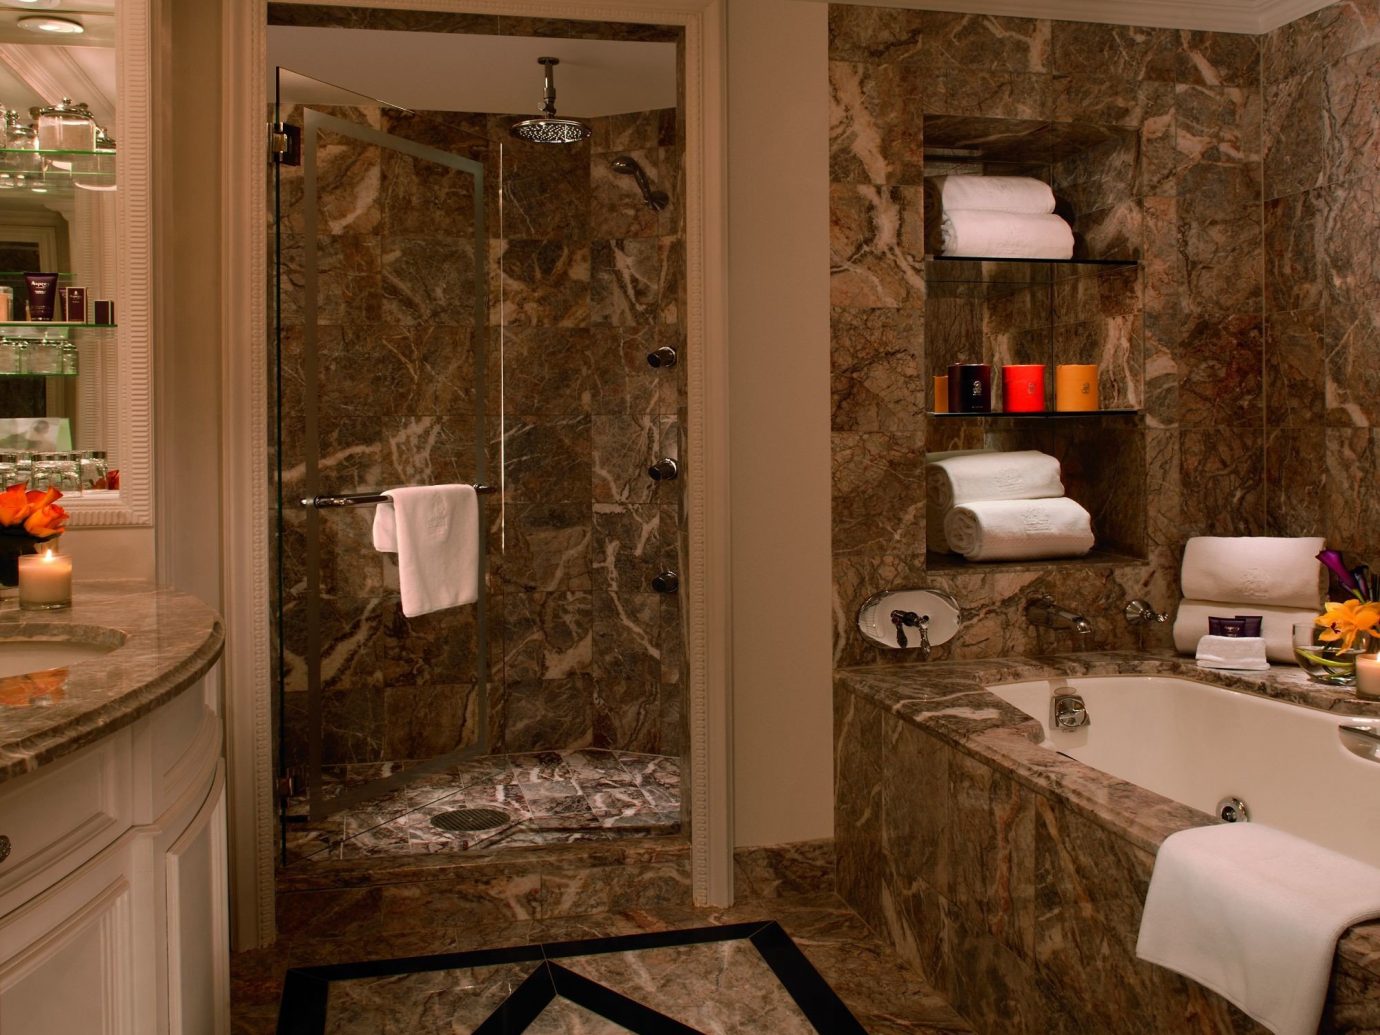 Hotels Luxury Travel indoor room interior design wall bathroom countertop flooring window floor tile area